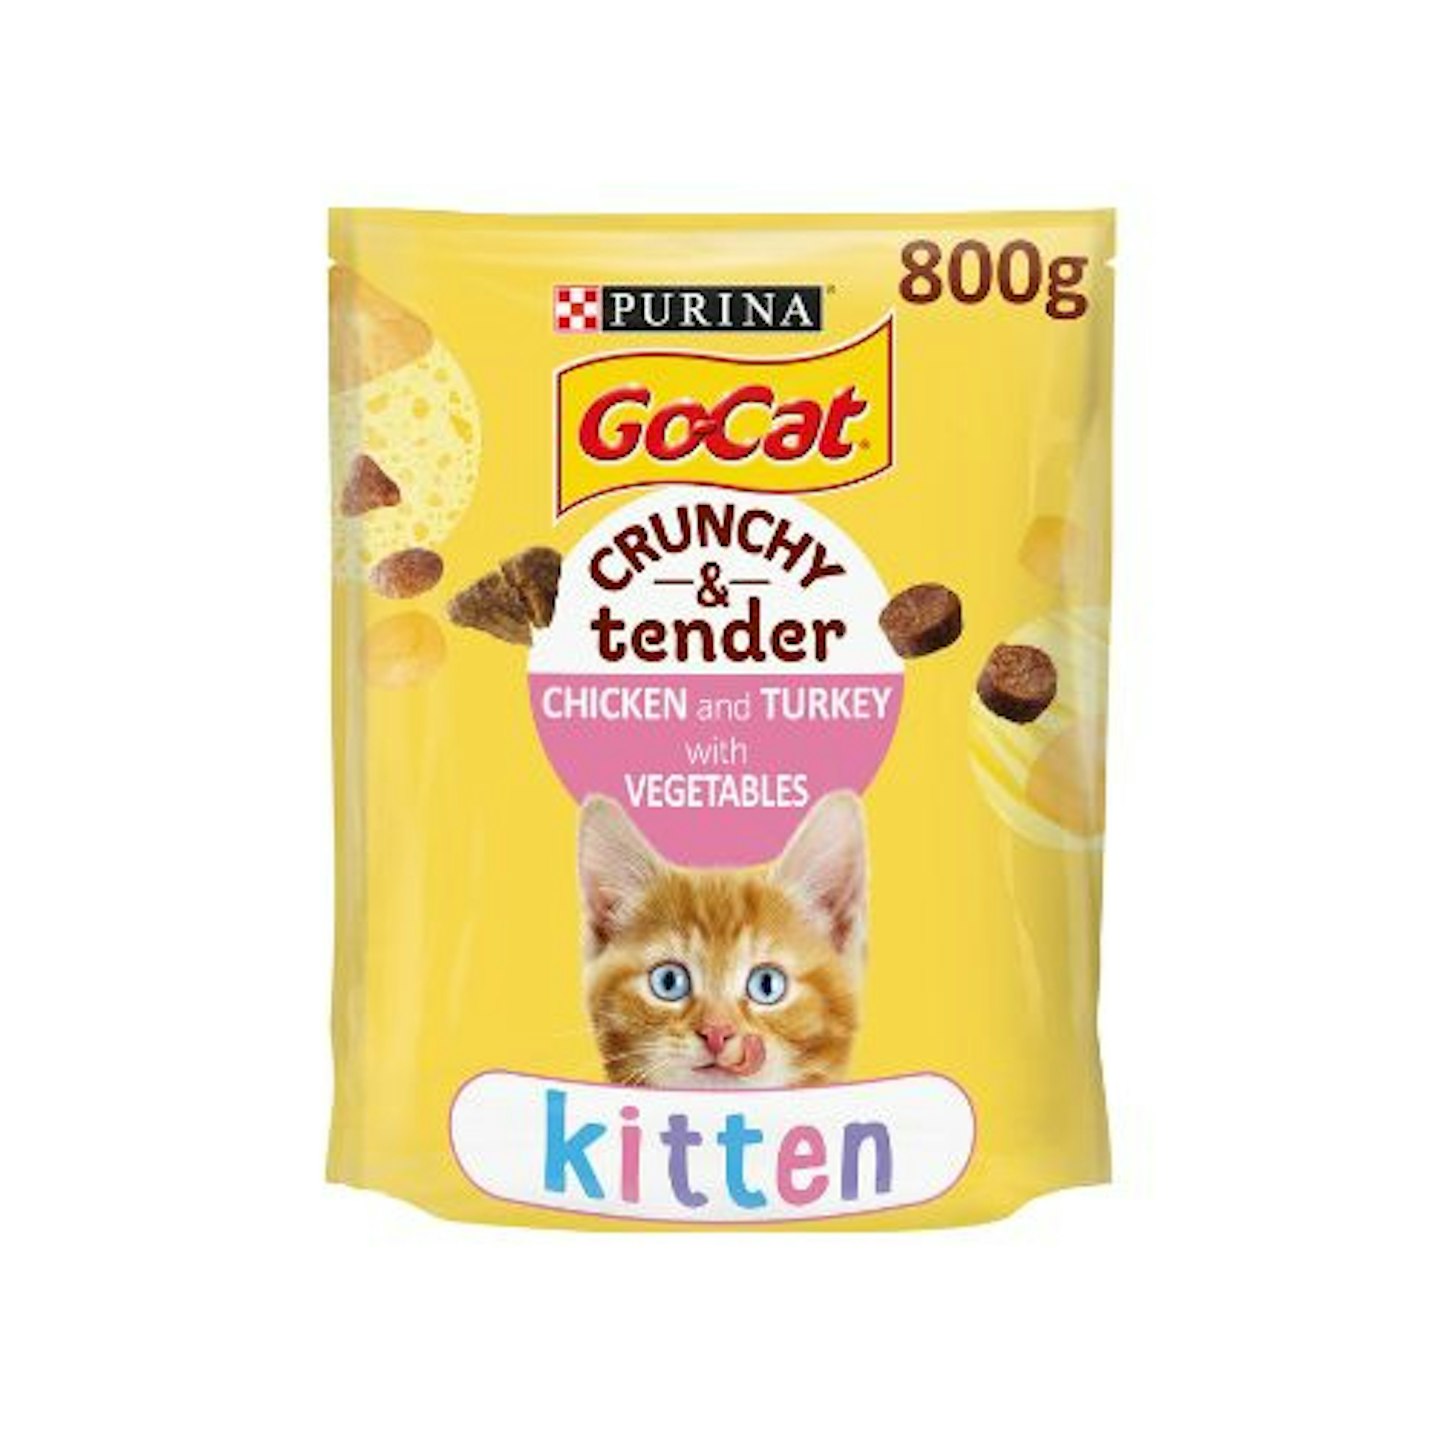 Go-Cat Crunchy & Tender Kitten Dry Cat Food